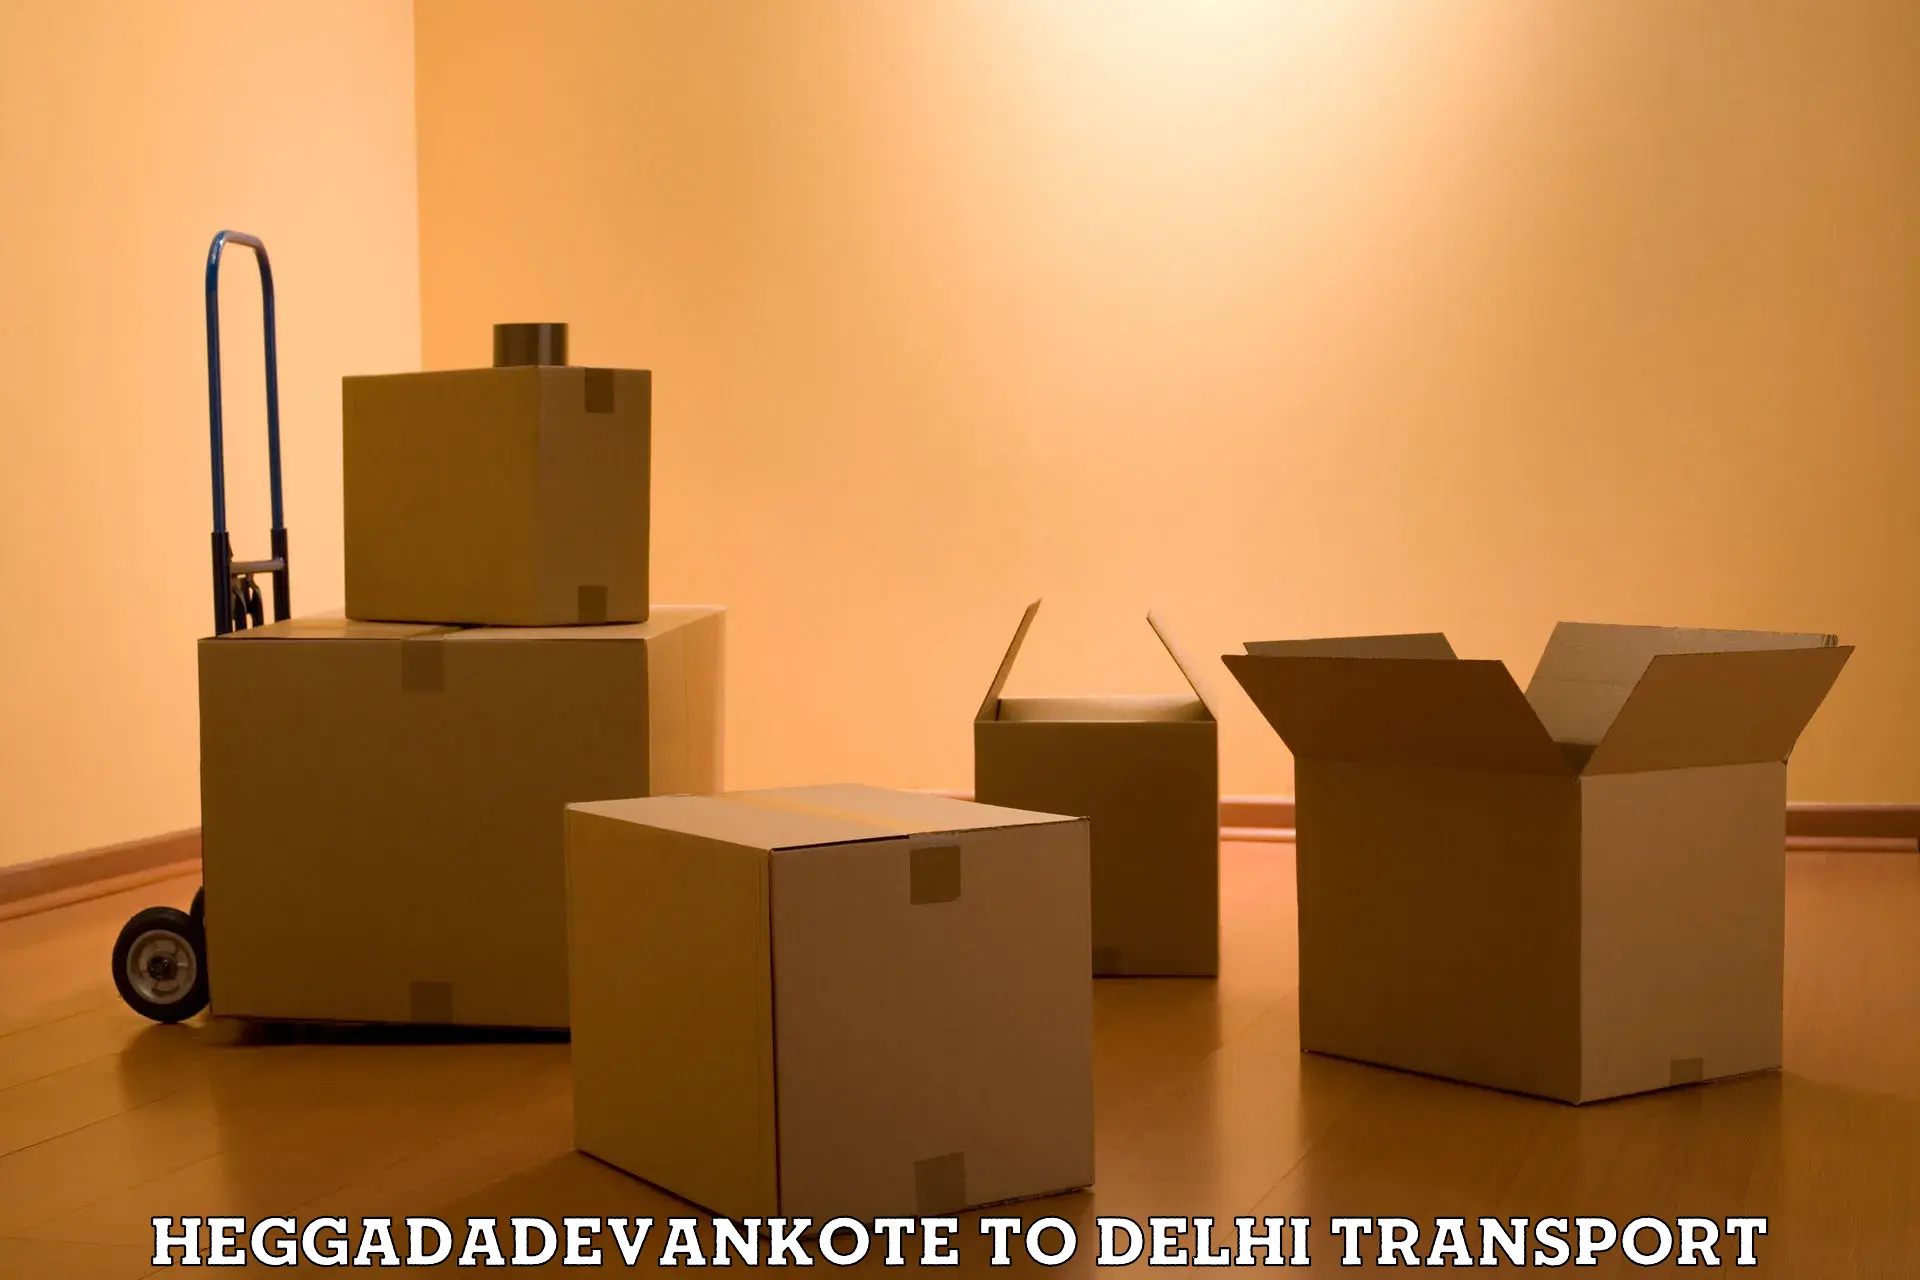 Furniture transport service Heggadadevankote to IIT Delhi